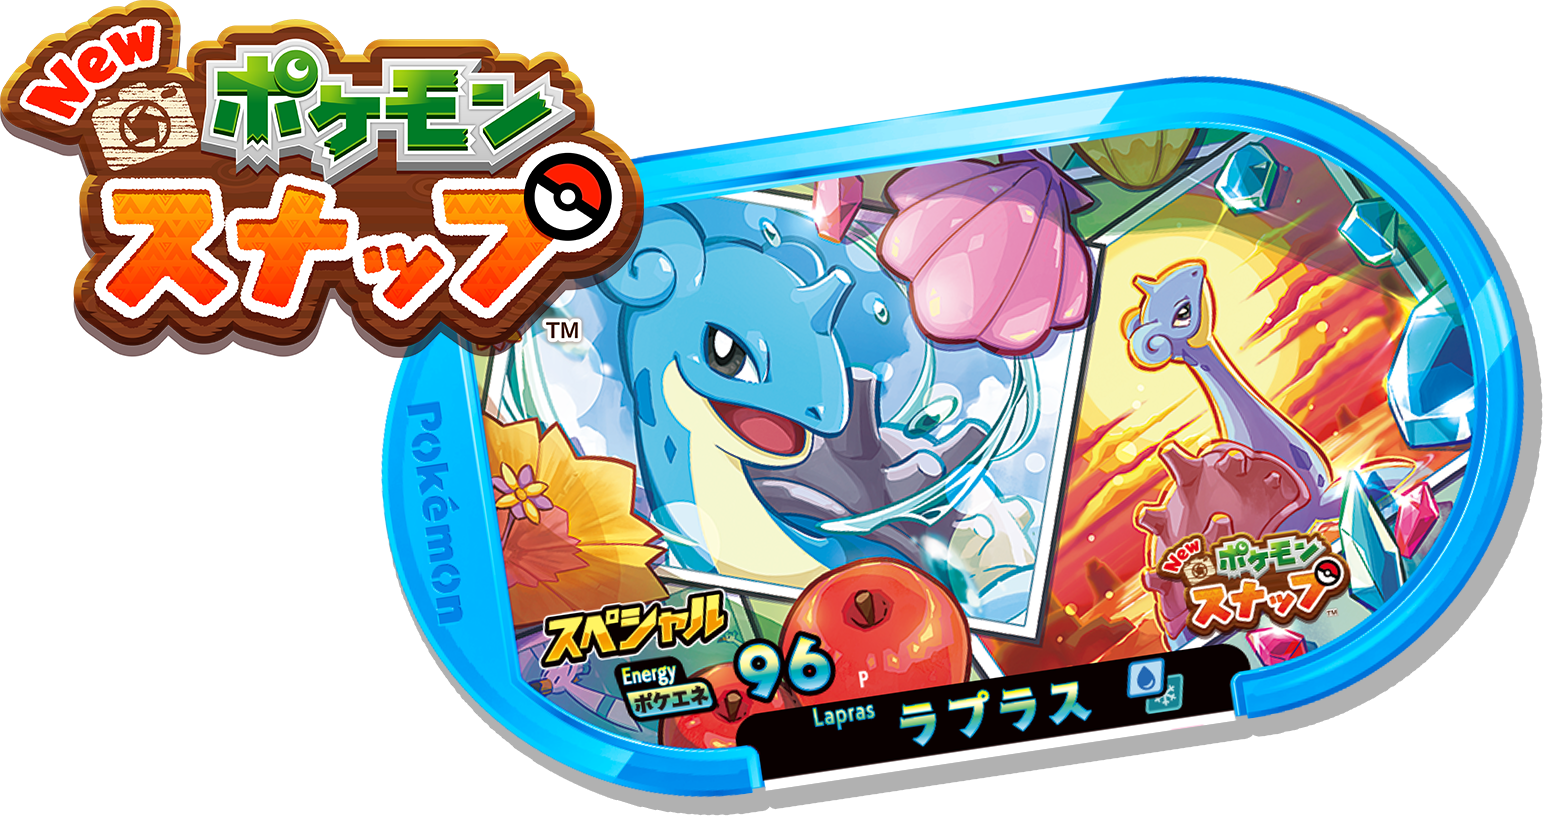 Pokémon MEZASTAR SPECIAL TAG Lapras ｢New Pokémon Snap｣ ver. in blister  Release date: April 30 2021  Lapras